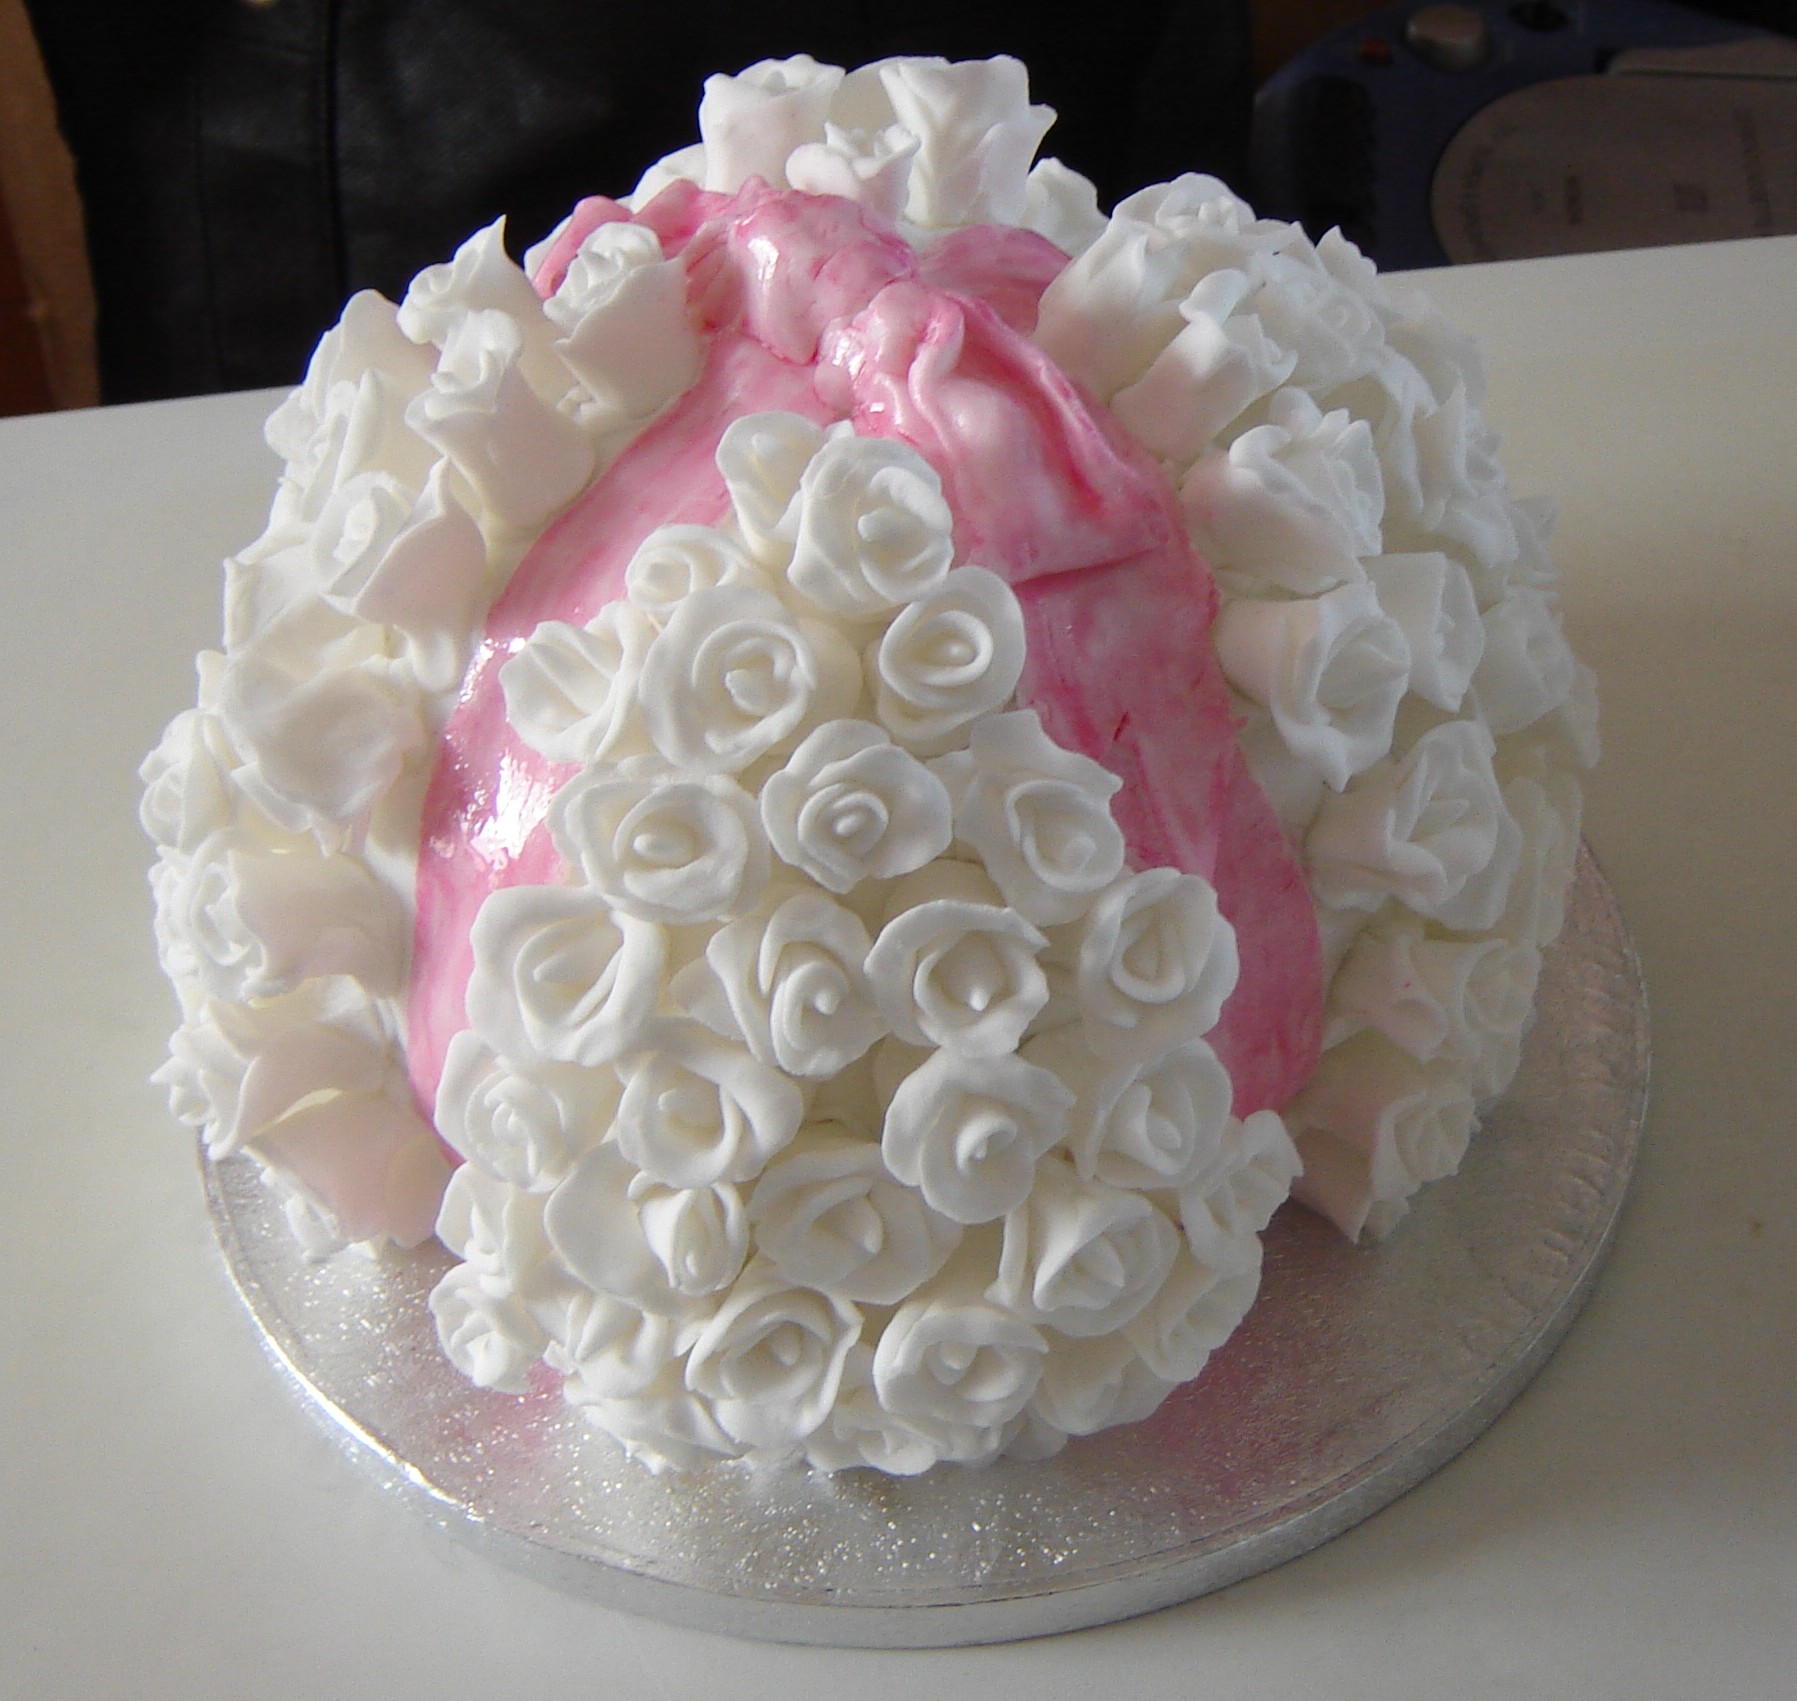 Trisha Ashley's celebration cake